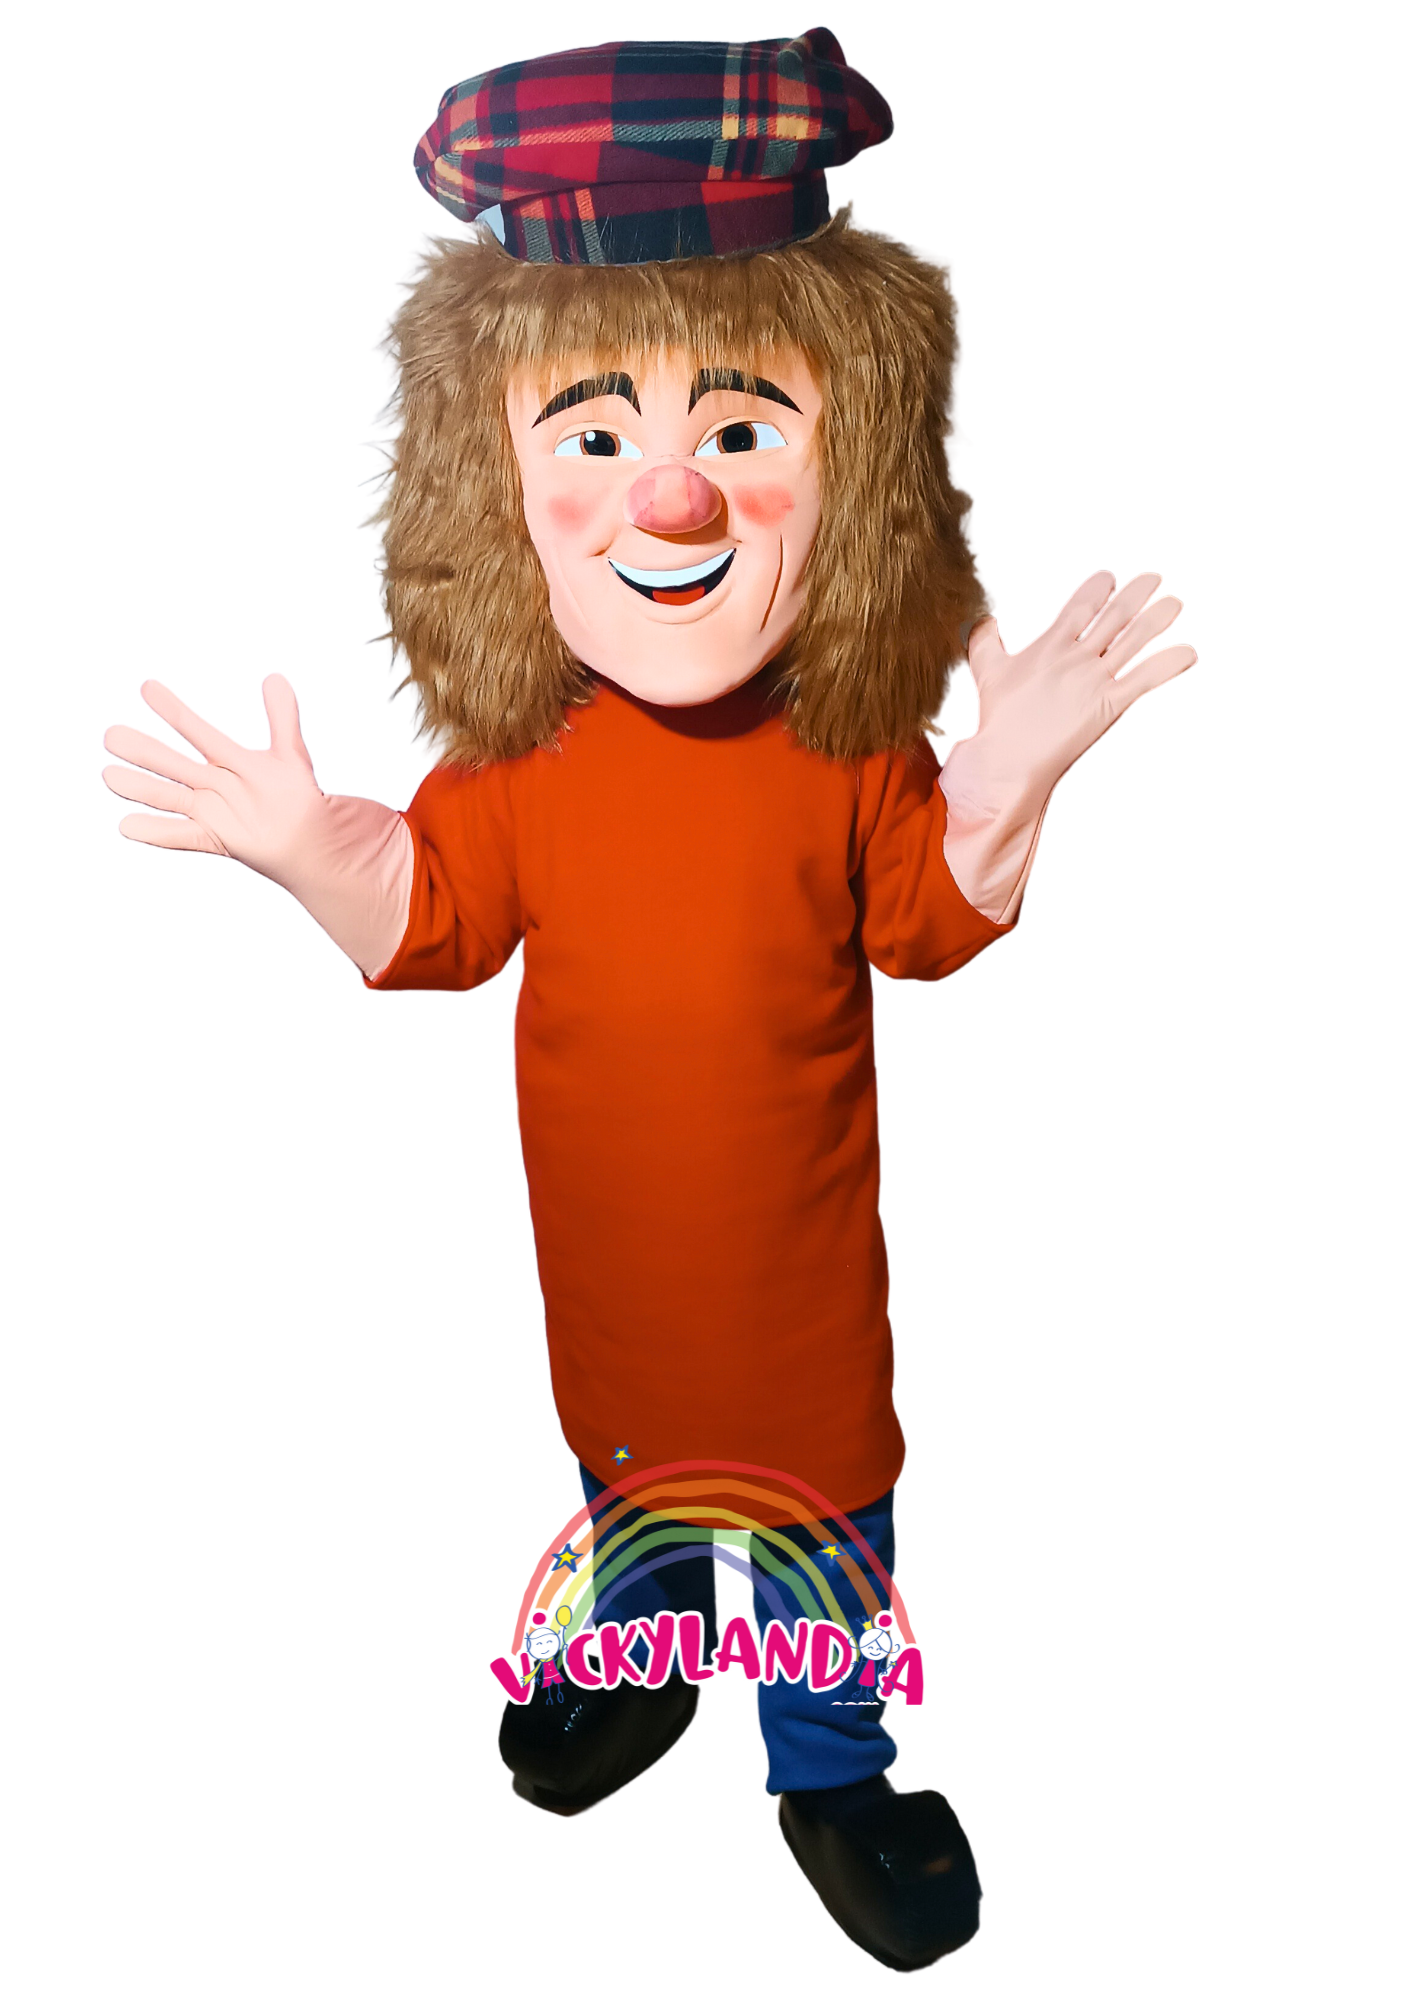 Descubre la magia de nuestro muñeco publicitario de Payaso TV Sombrero a Cuadros en Vickylandia. Son disfraces cabezones perfectos para fiestas infantiles, shows, cumpleaños, estrategias publicitarias, carnavales, fiestas patronales, espectáculos, cabalgatas y cualquier tipo de evento